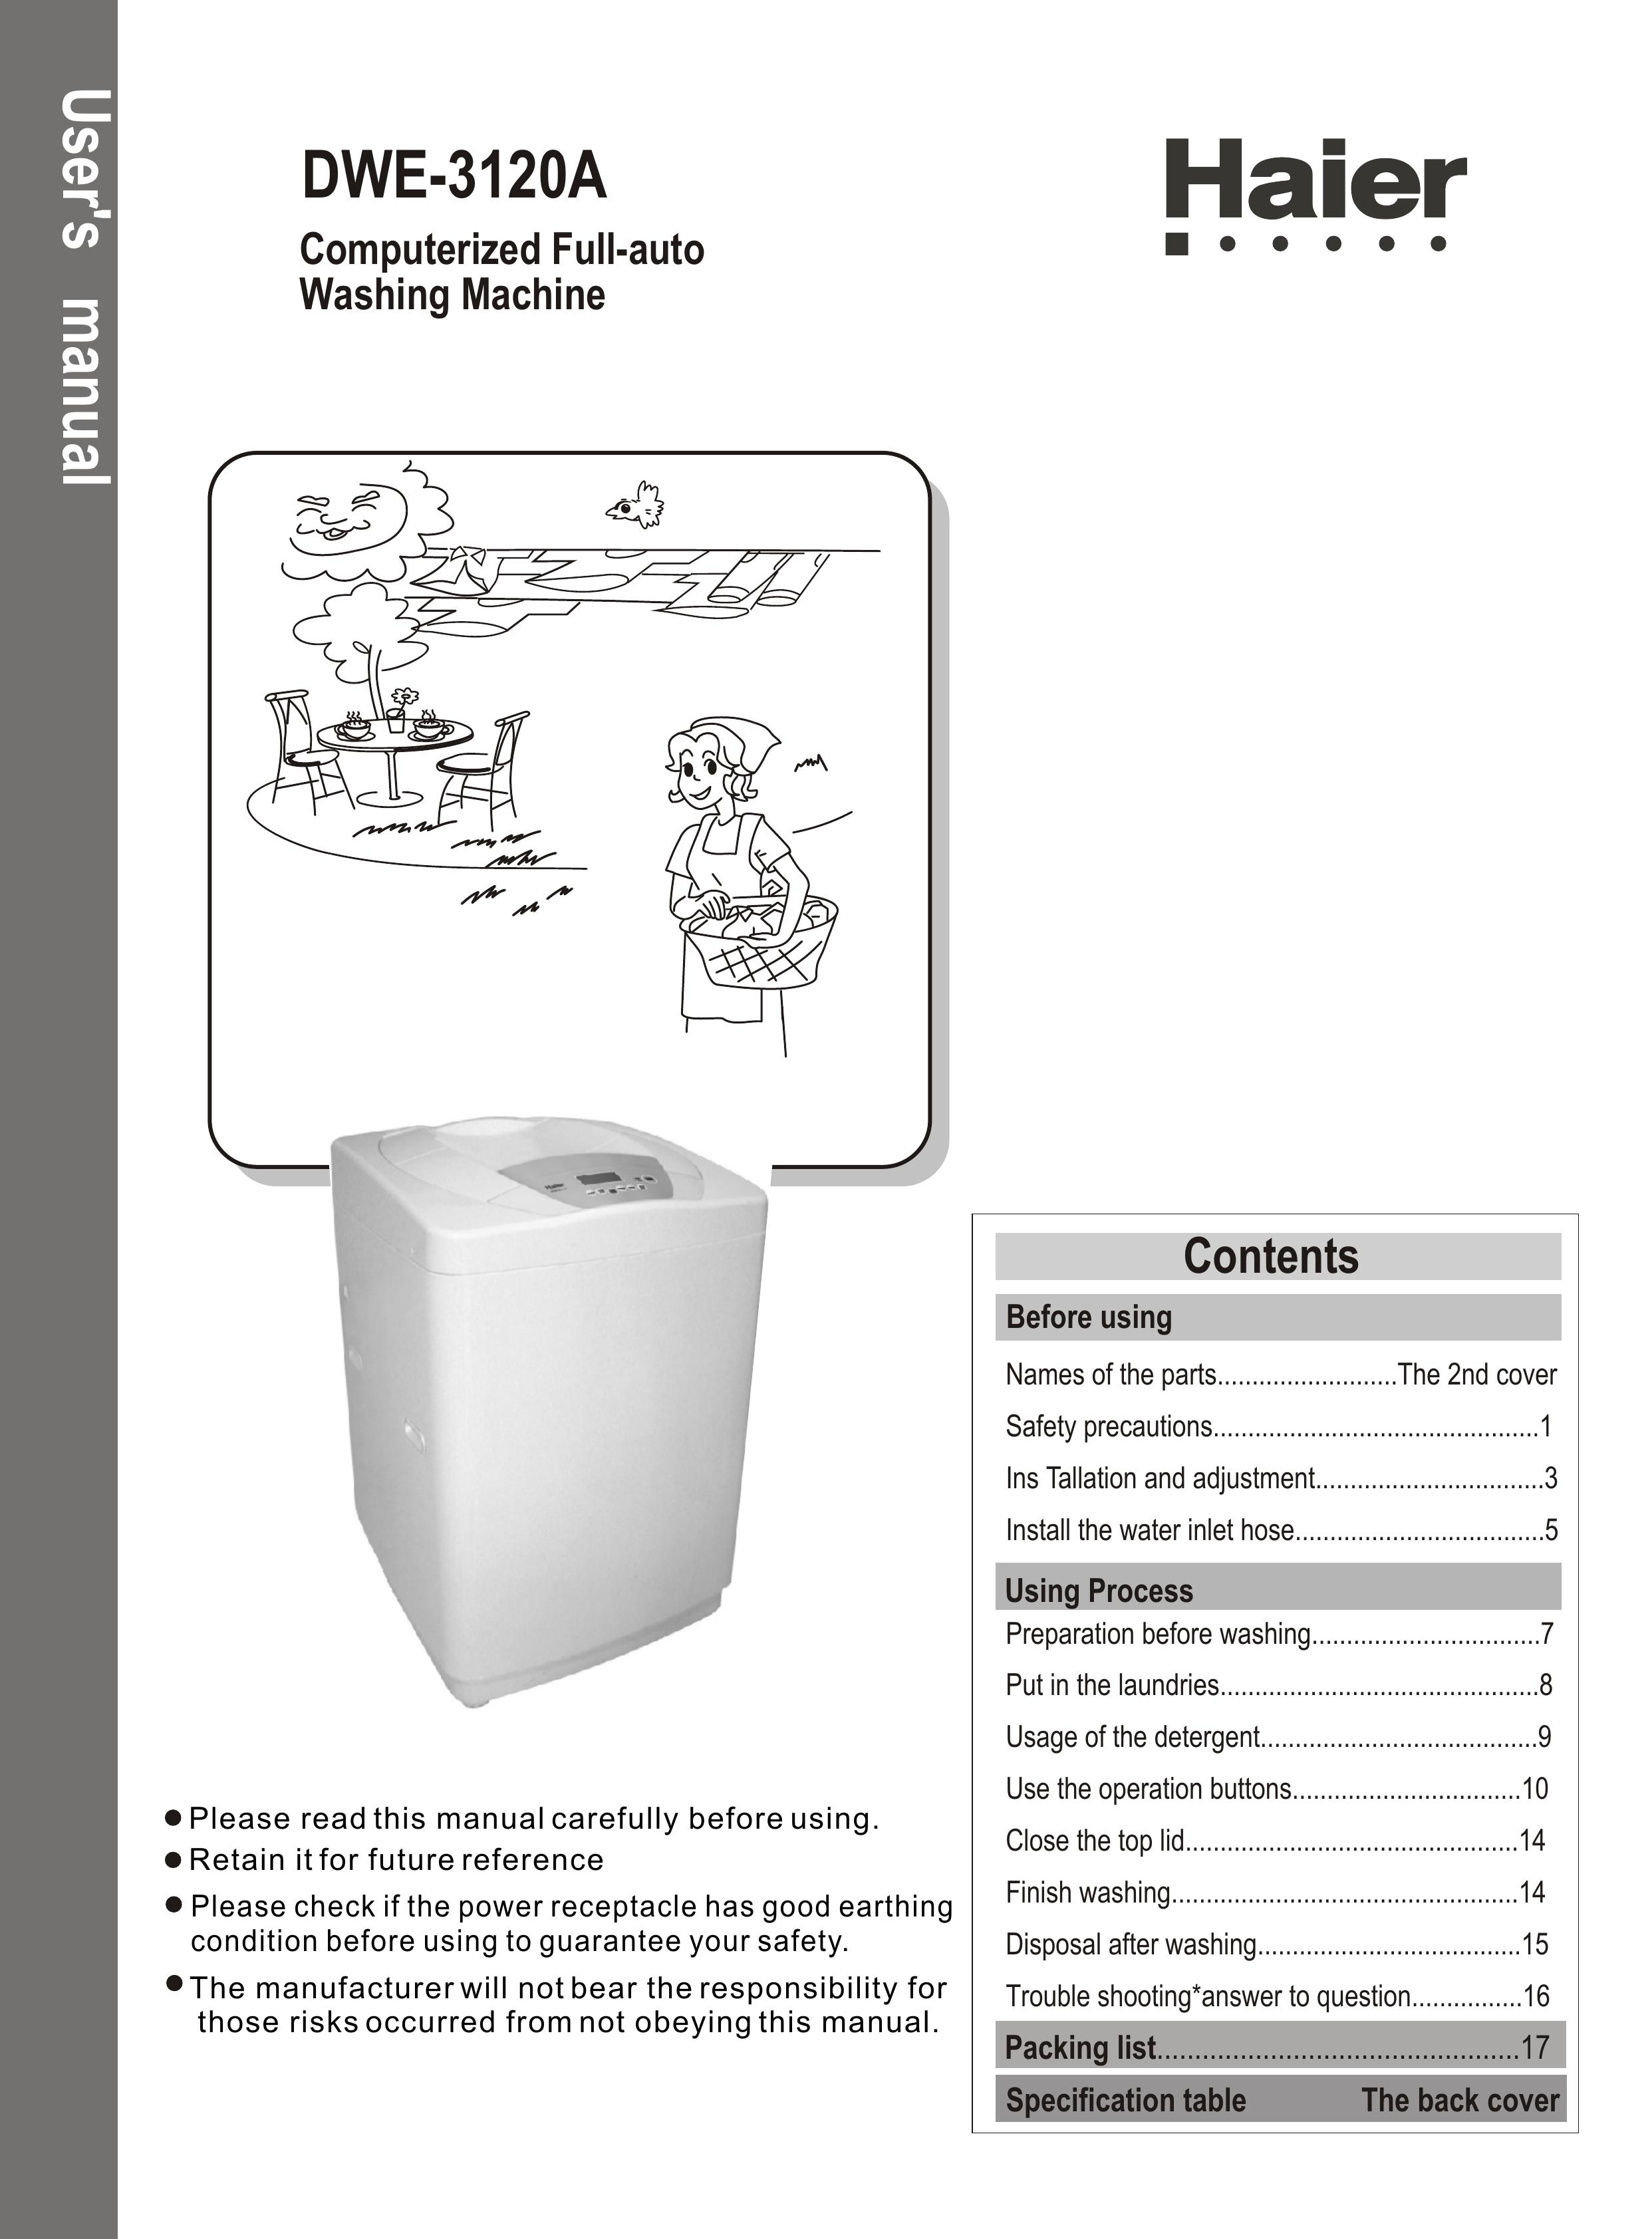 Haier DWE-3120A Washer/Dryer User Manual